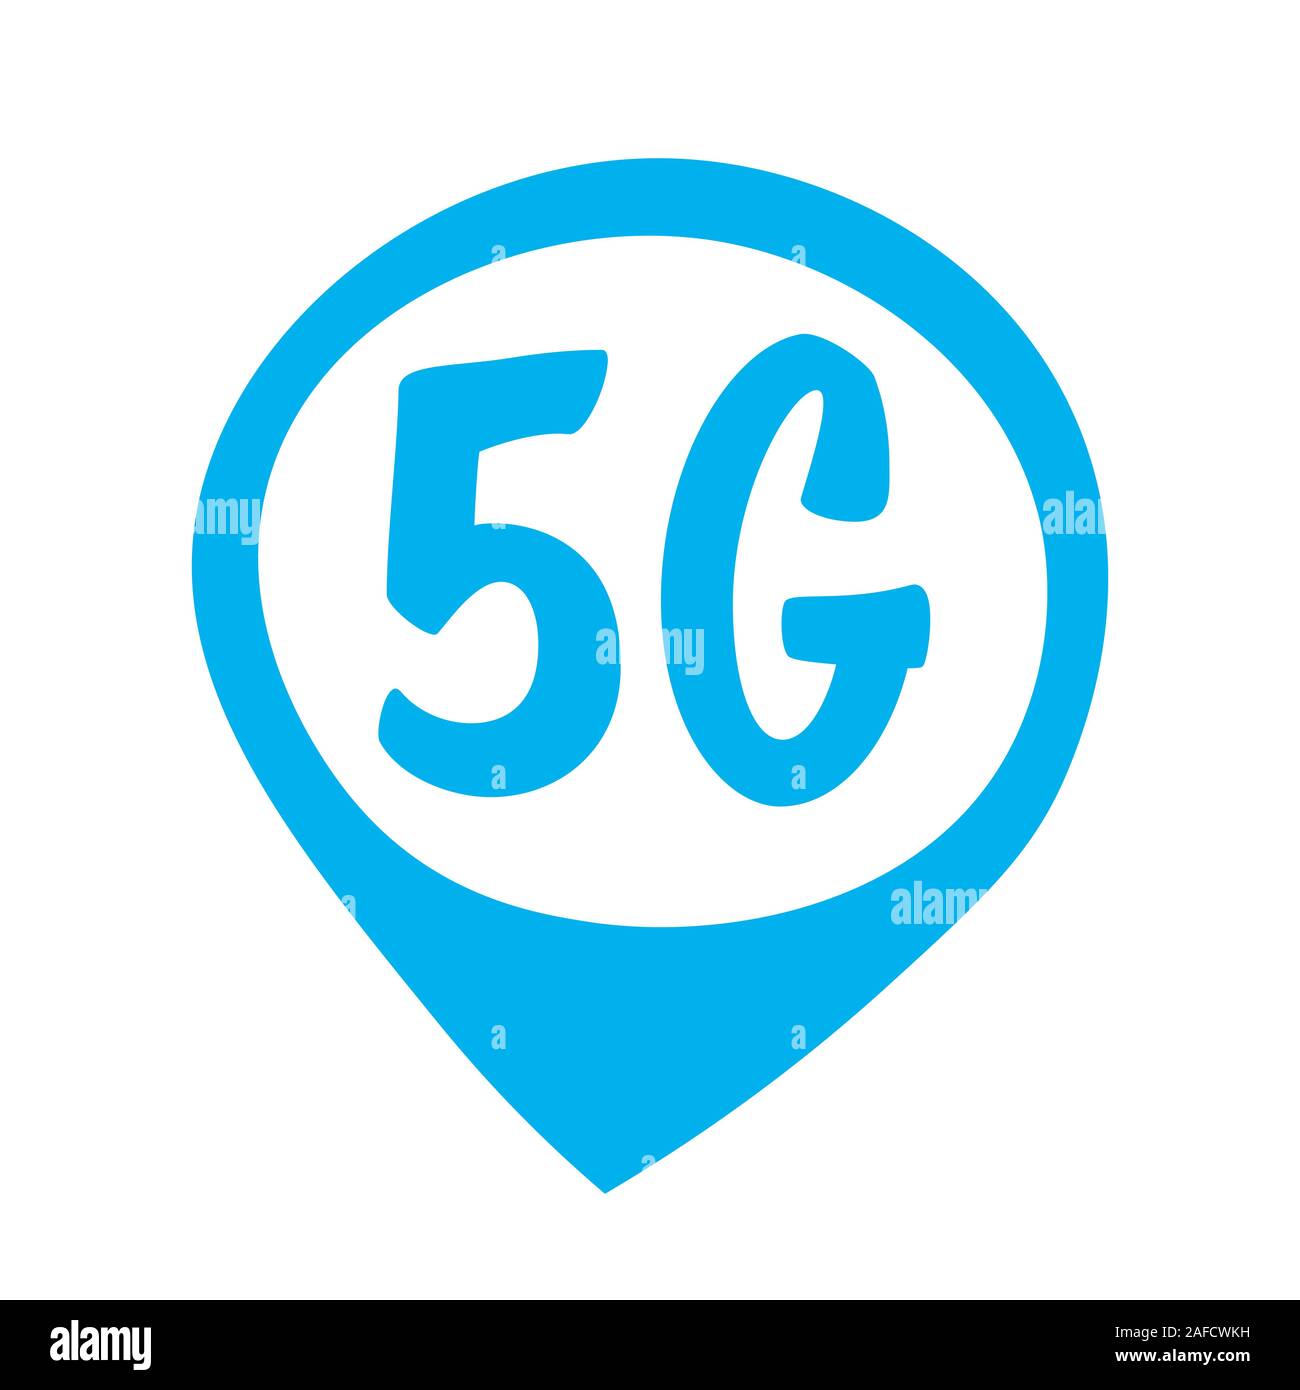 5G Sticker online drahtloses System Verbindung Konzept 5. innovative Generation von high speed internet Zeichen Symbol mobile Telekommunikation Technologie symbol Vektor illustration Stock Vektor